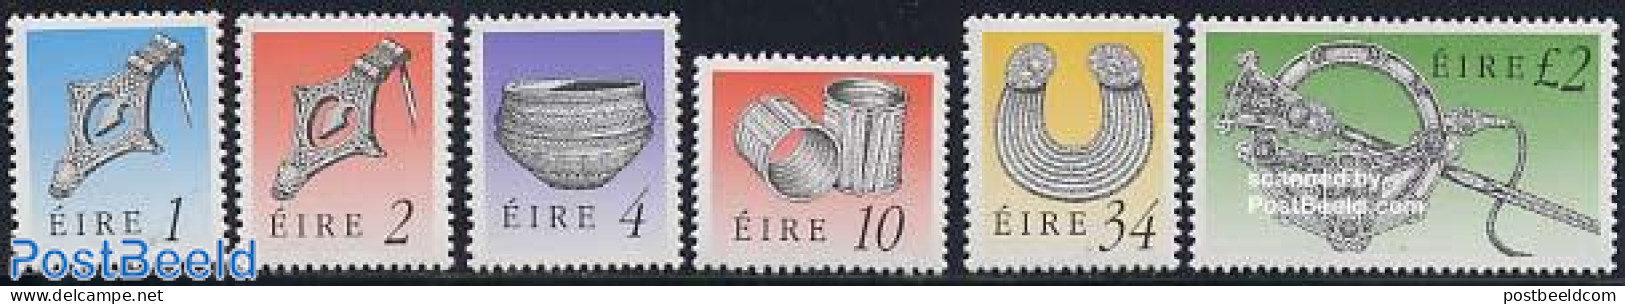 Ireland 1990 Definitives 6v, Mint NH, Art - Art & Antique Objects - Ungebraucht